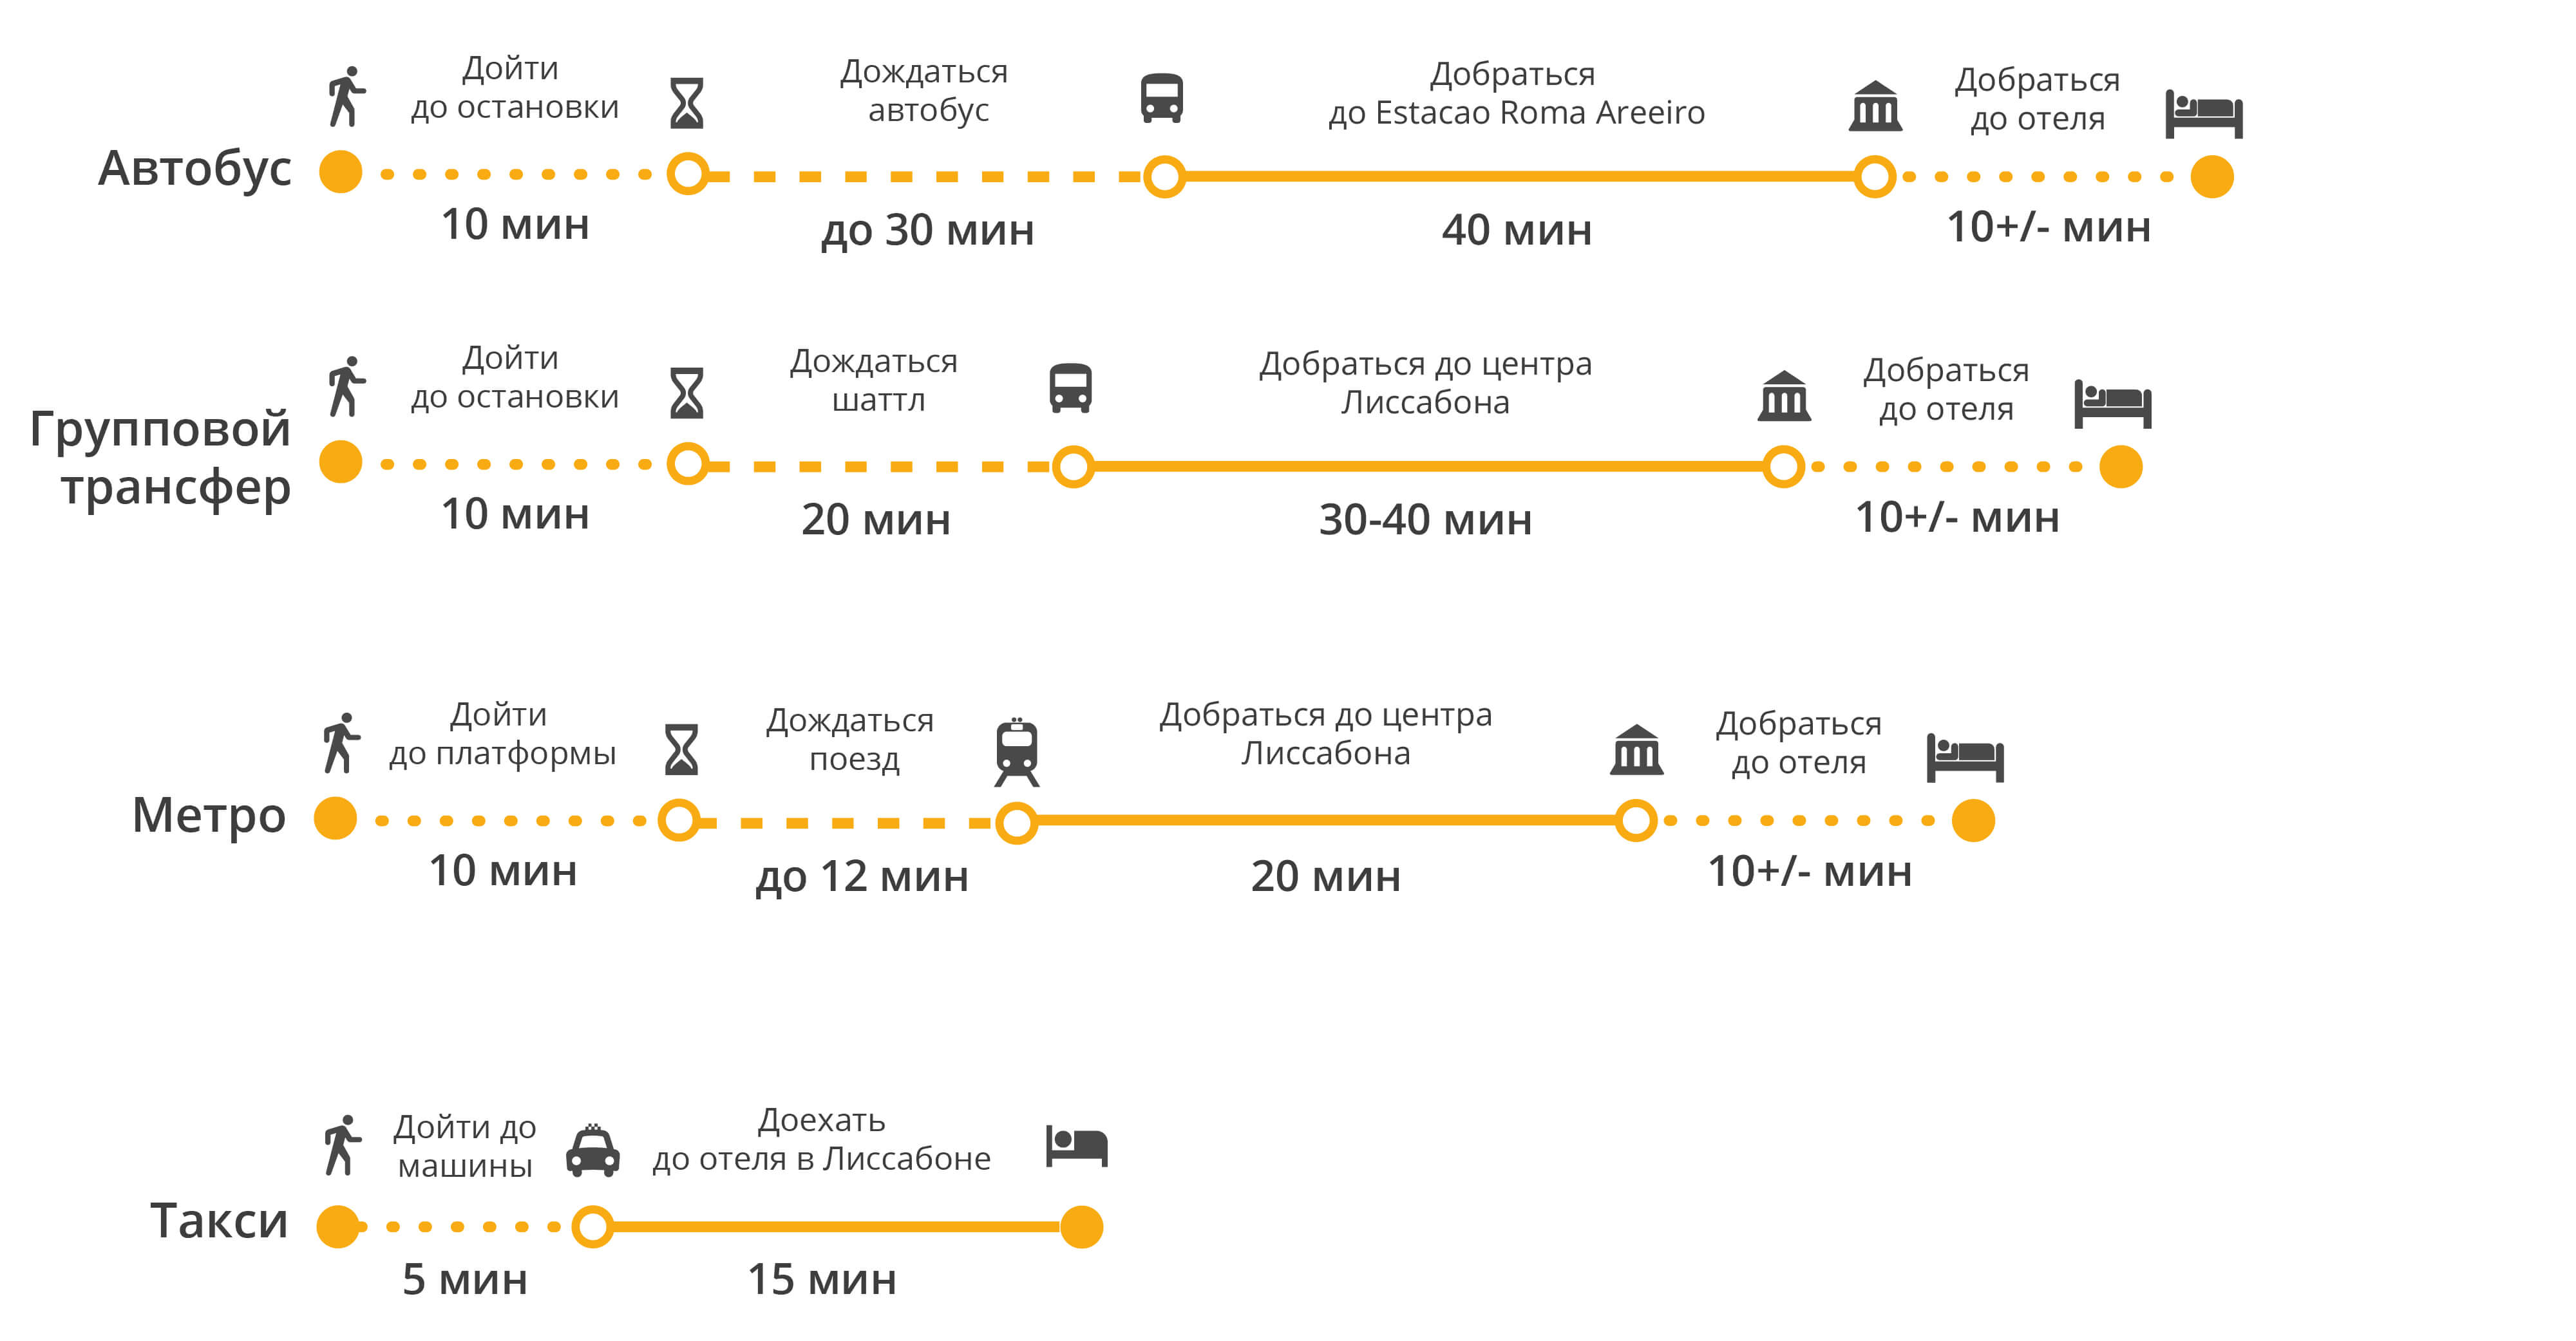 Аэропорт риги: как добраться до центра города рига: доехать на автобусе, такси